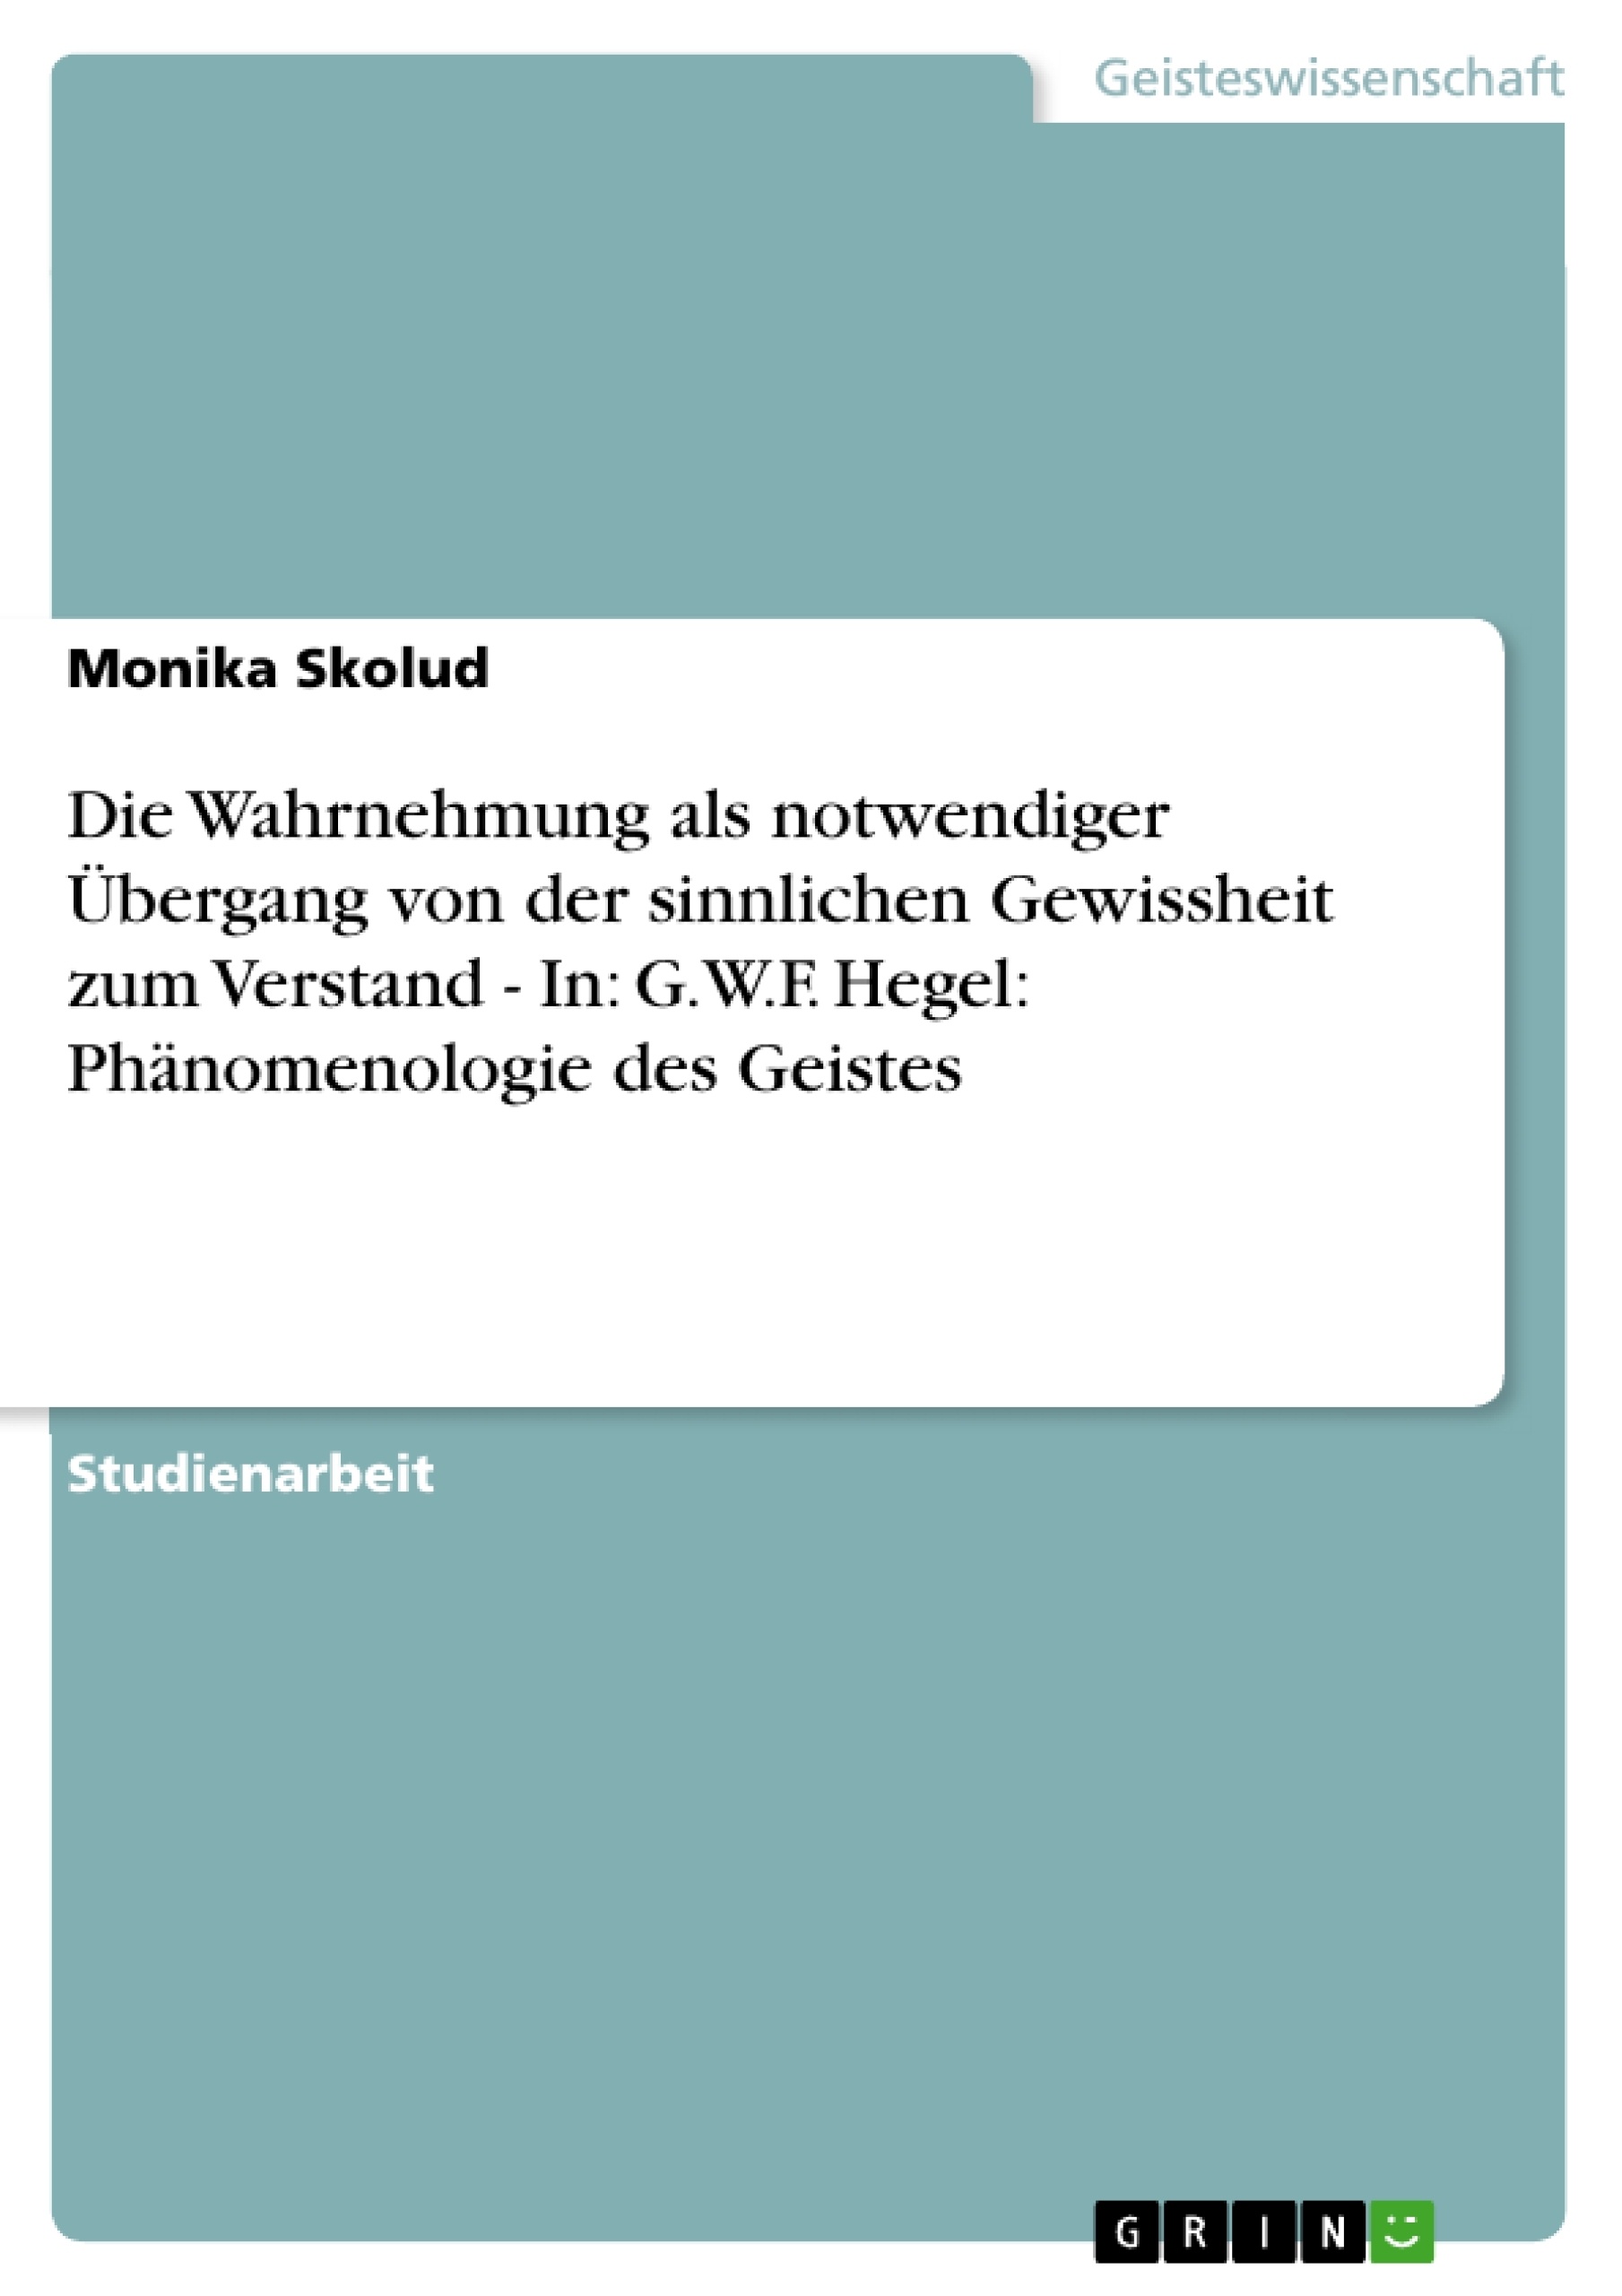 Titel: Die Wahrnehmung als notwendiger Übergang von der sinnlichen Gewissheit zum Verstand - In: G.W.F. Hegel: Phänomenologie des Geistes